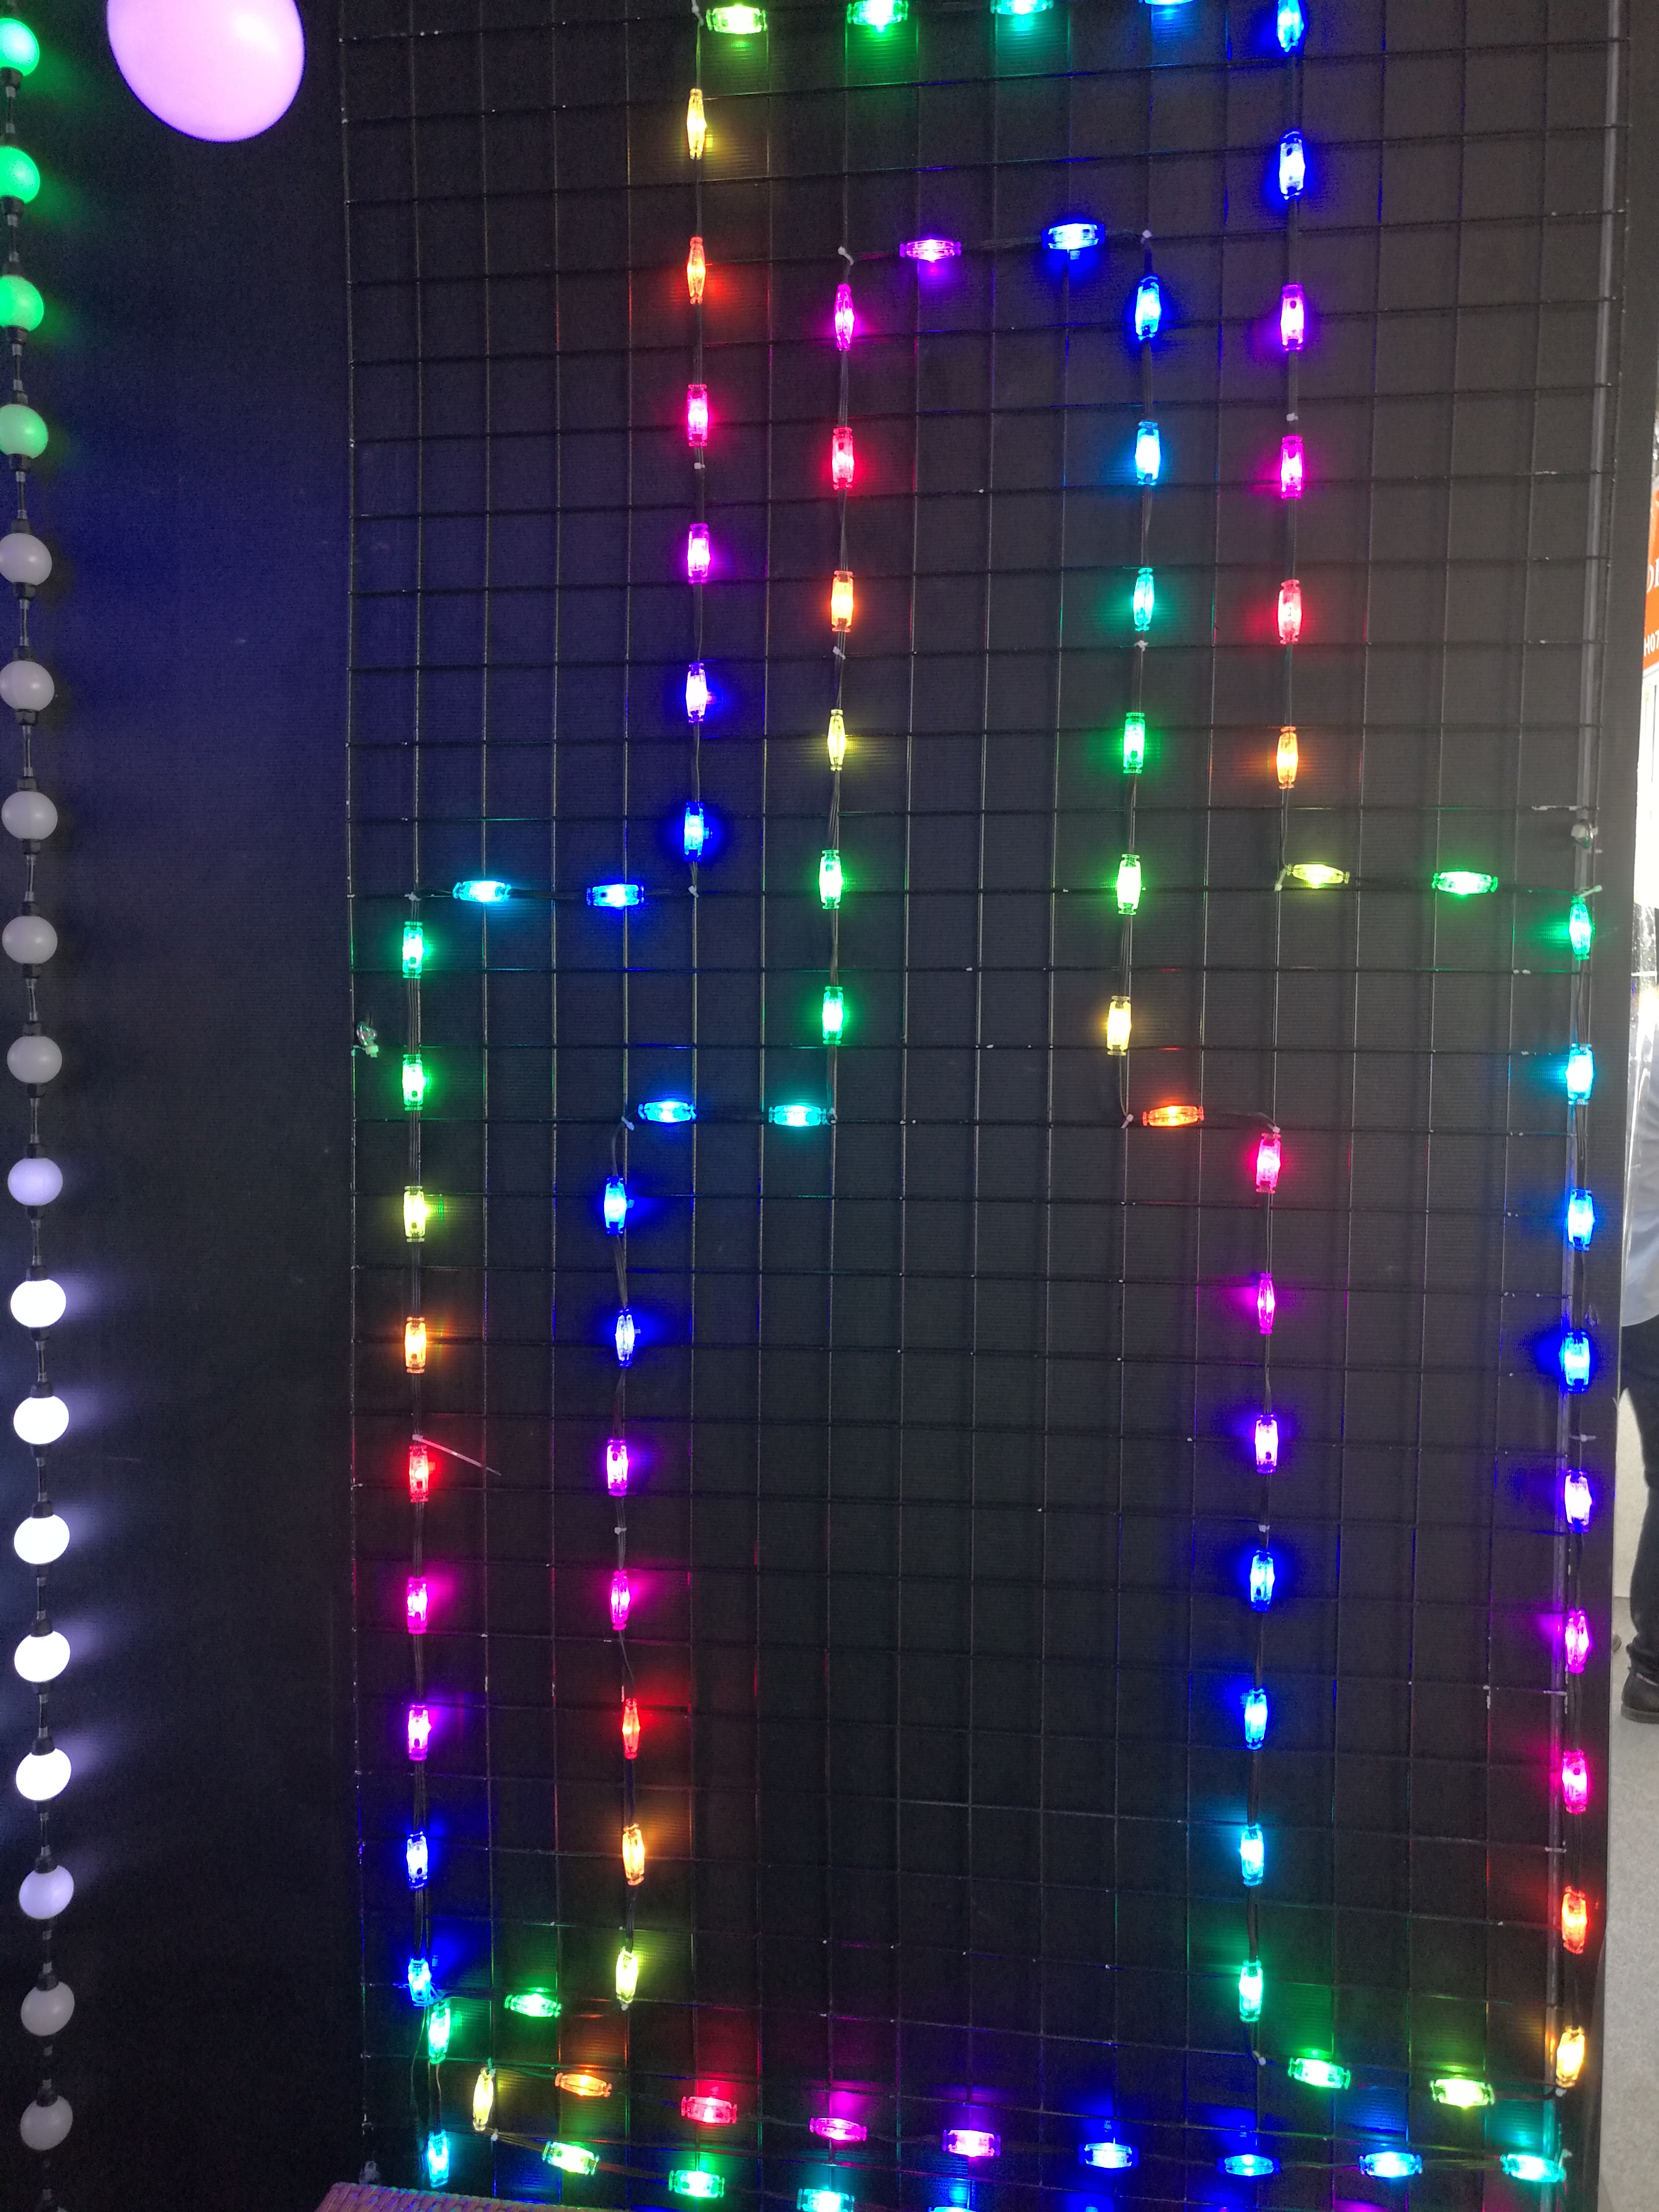 24V LED Decorative LED String Lights